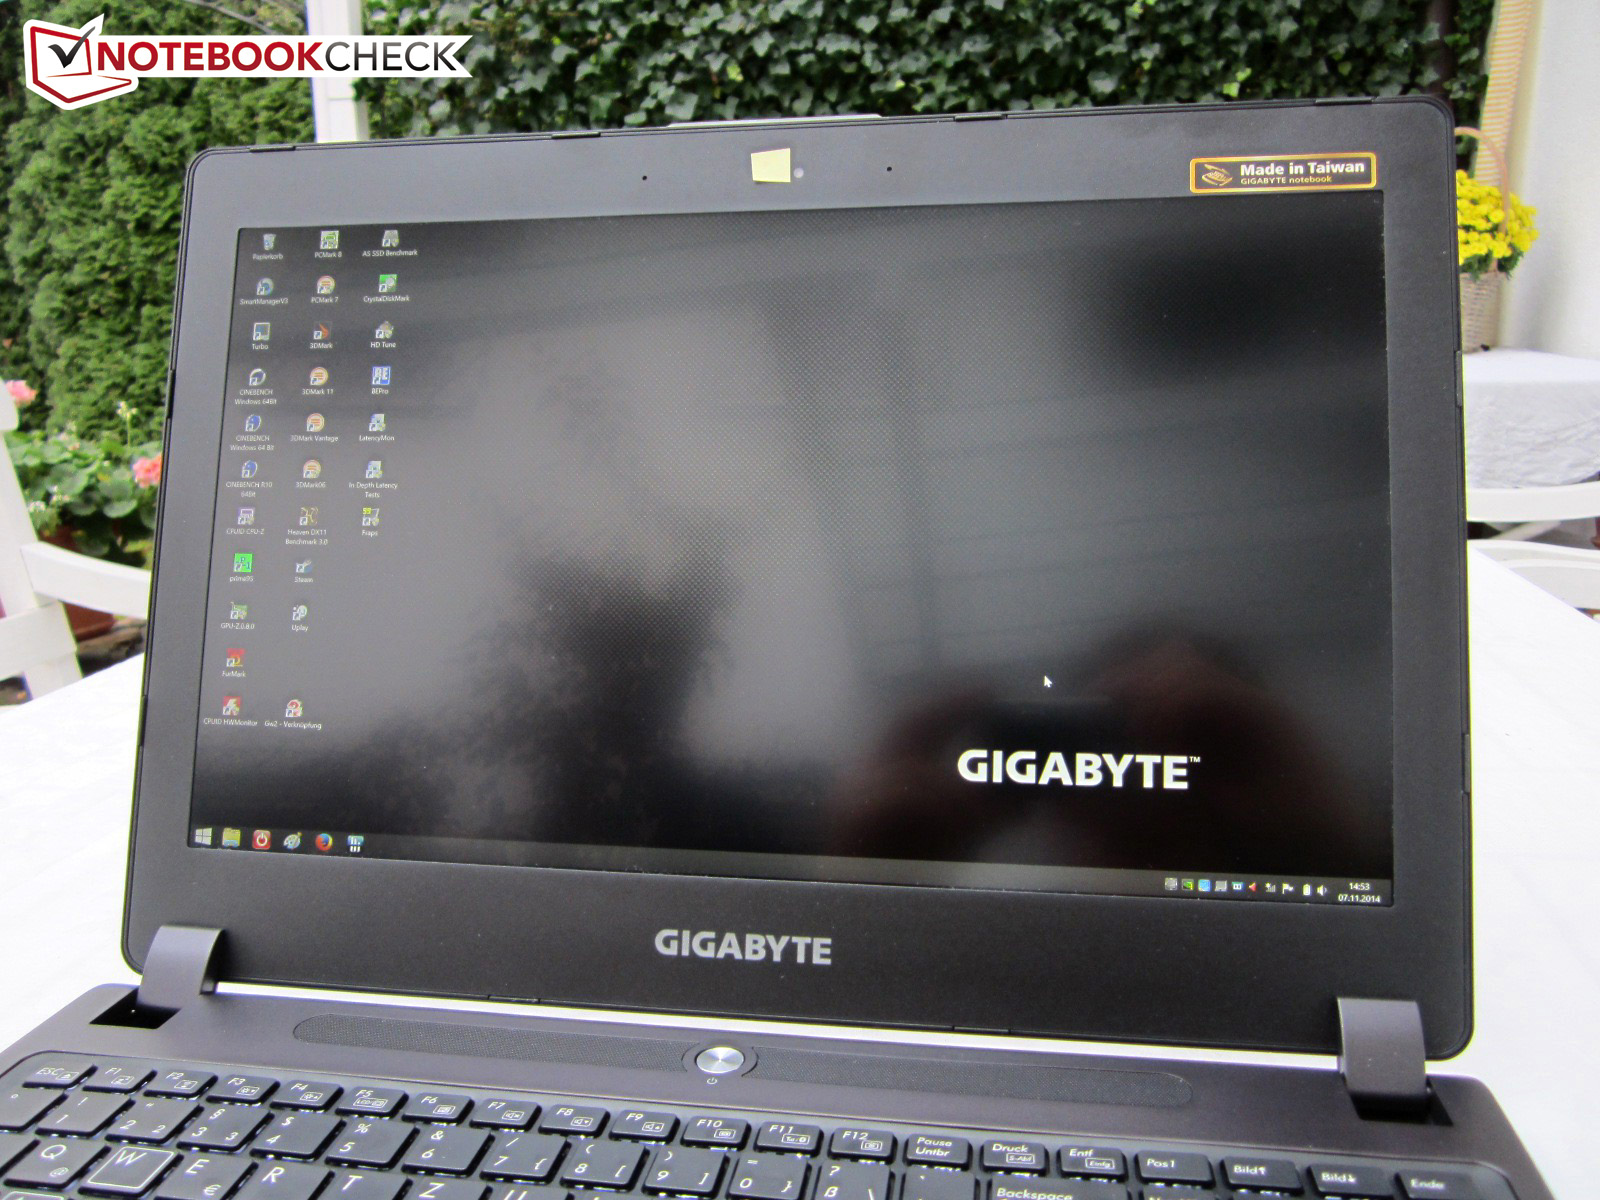 Laptop Colourful Backlit Keyboard for Gigabyte P35X P35X V3 P35X V4 P35X V5 P35X V6 P35X V6-PC4D P35X V6-PC4K4D P35X V7 Greece GK with Black Frame 